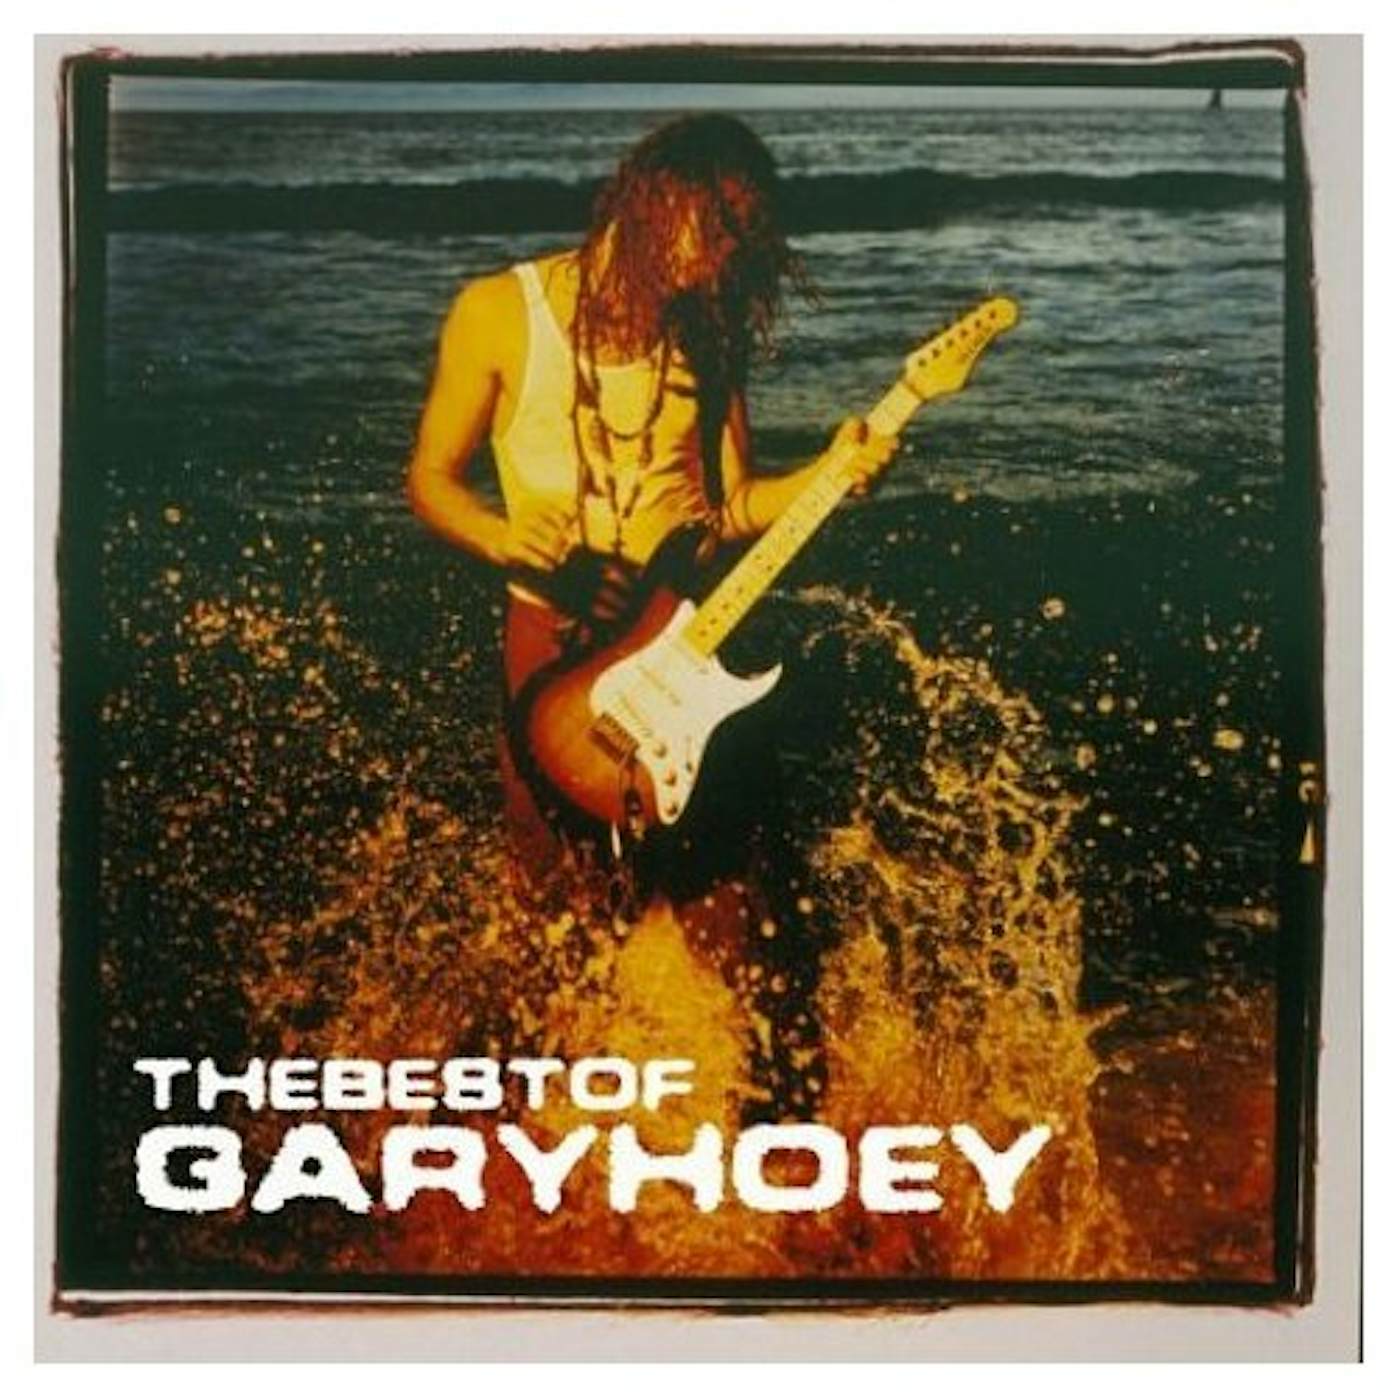 BEST OF GARY HOEY CD